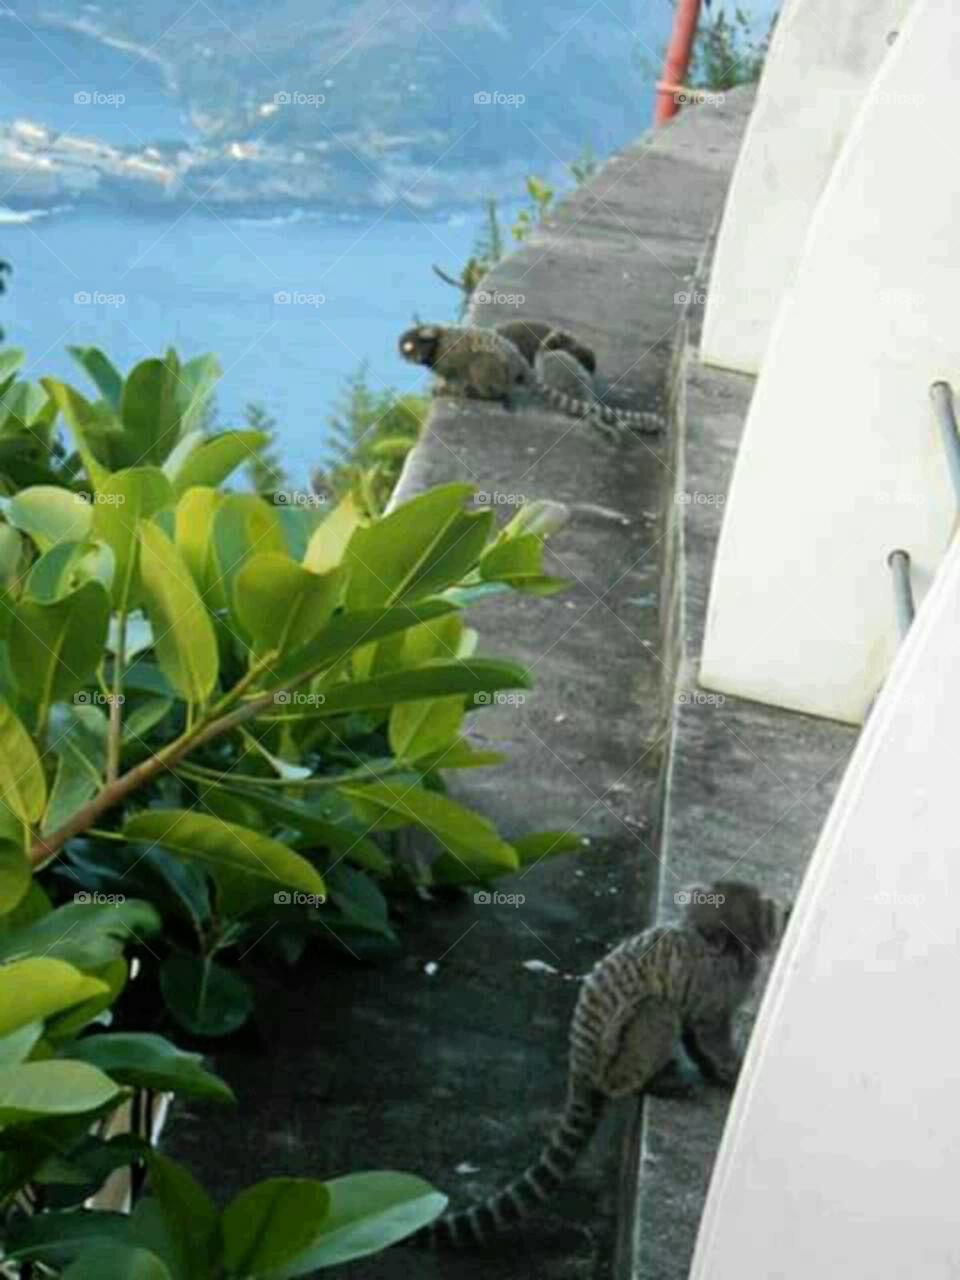 Monkeys in Rio